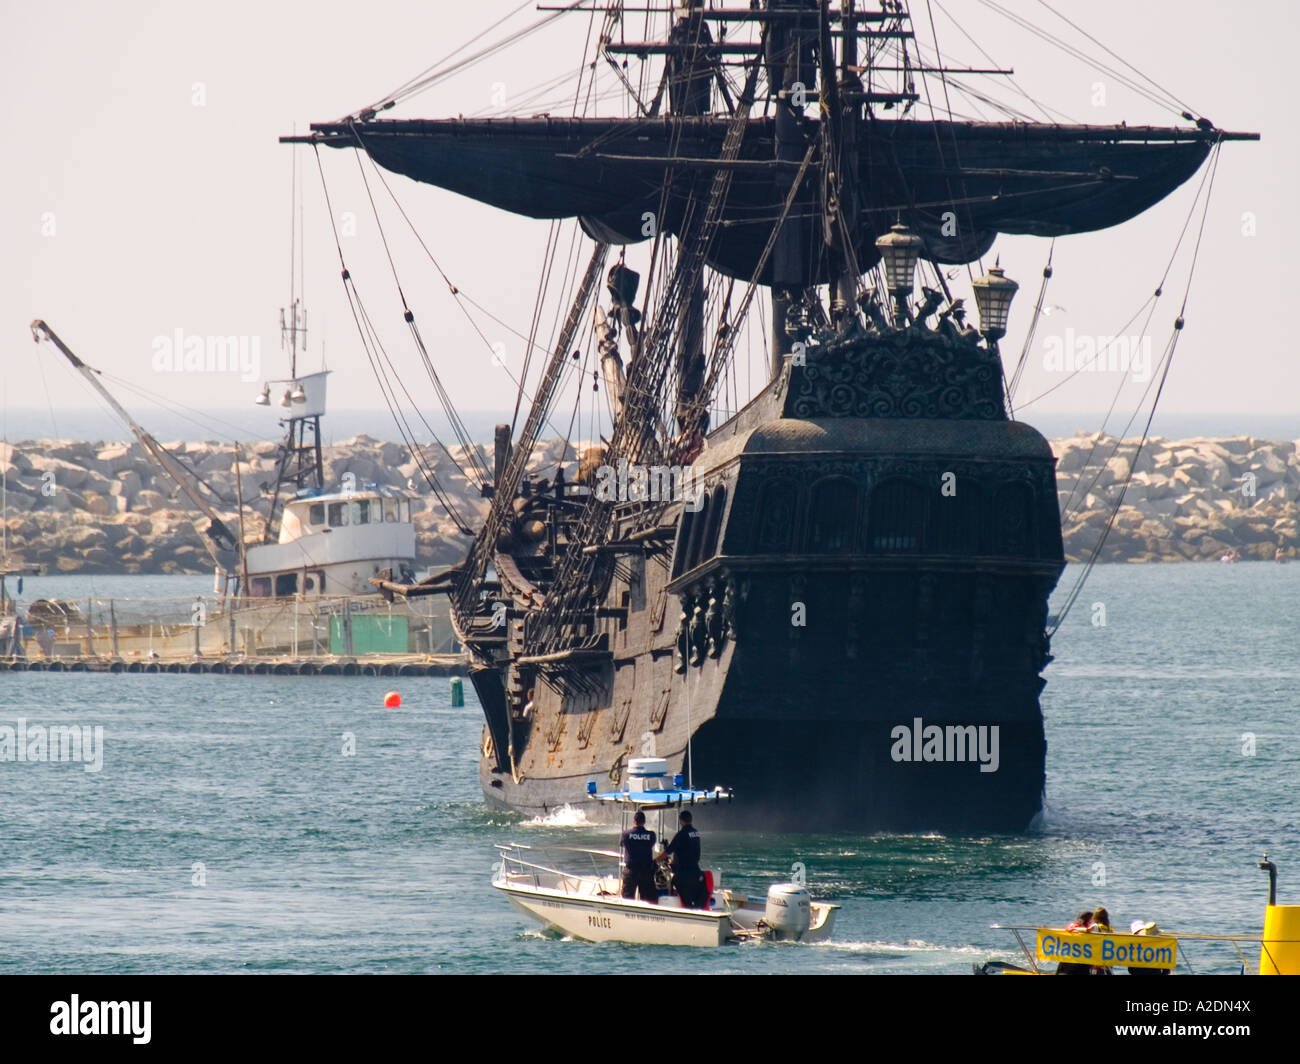 La compañía Disney barco la Perla Negra, entra en Redondo Beach, CA.  puerto, después de la filmación de Piratas del Caribe 3.EE.UU Fotografía de  stock - Alamy